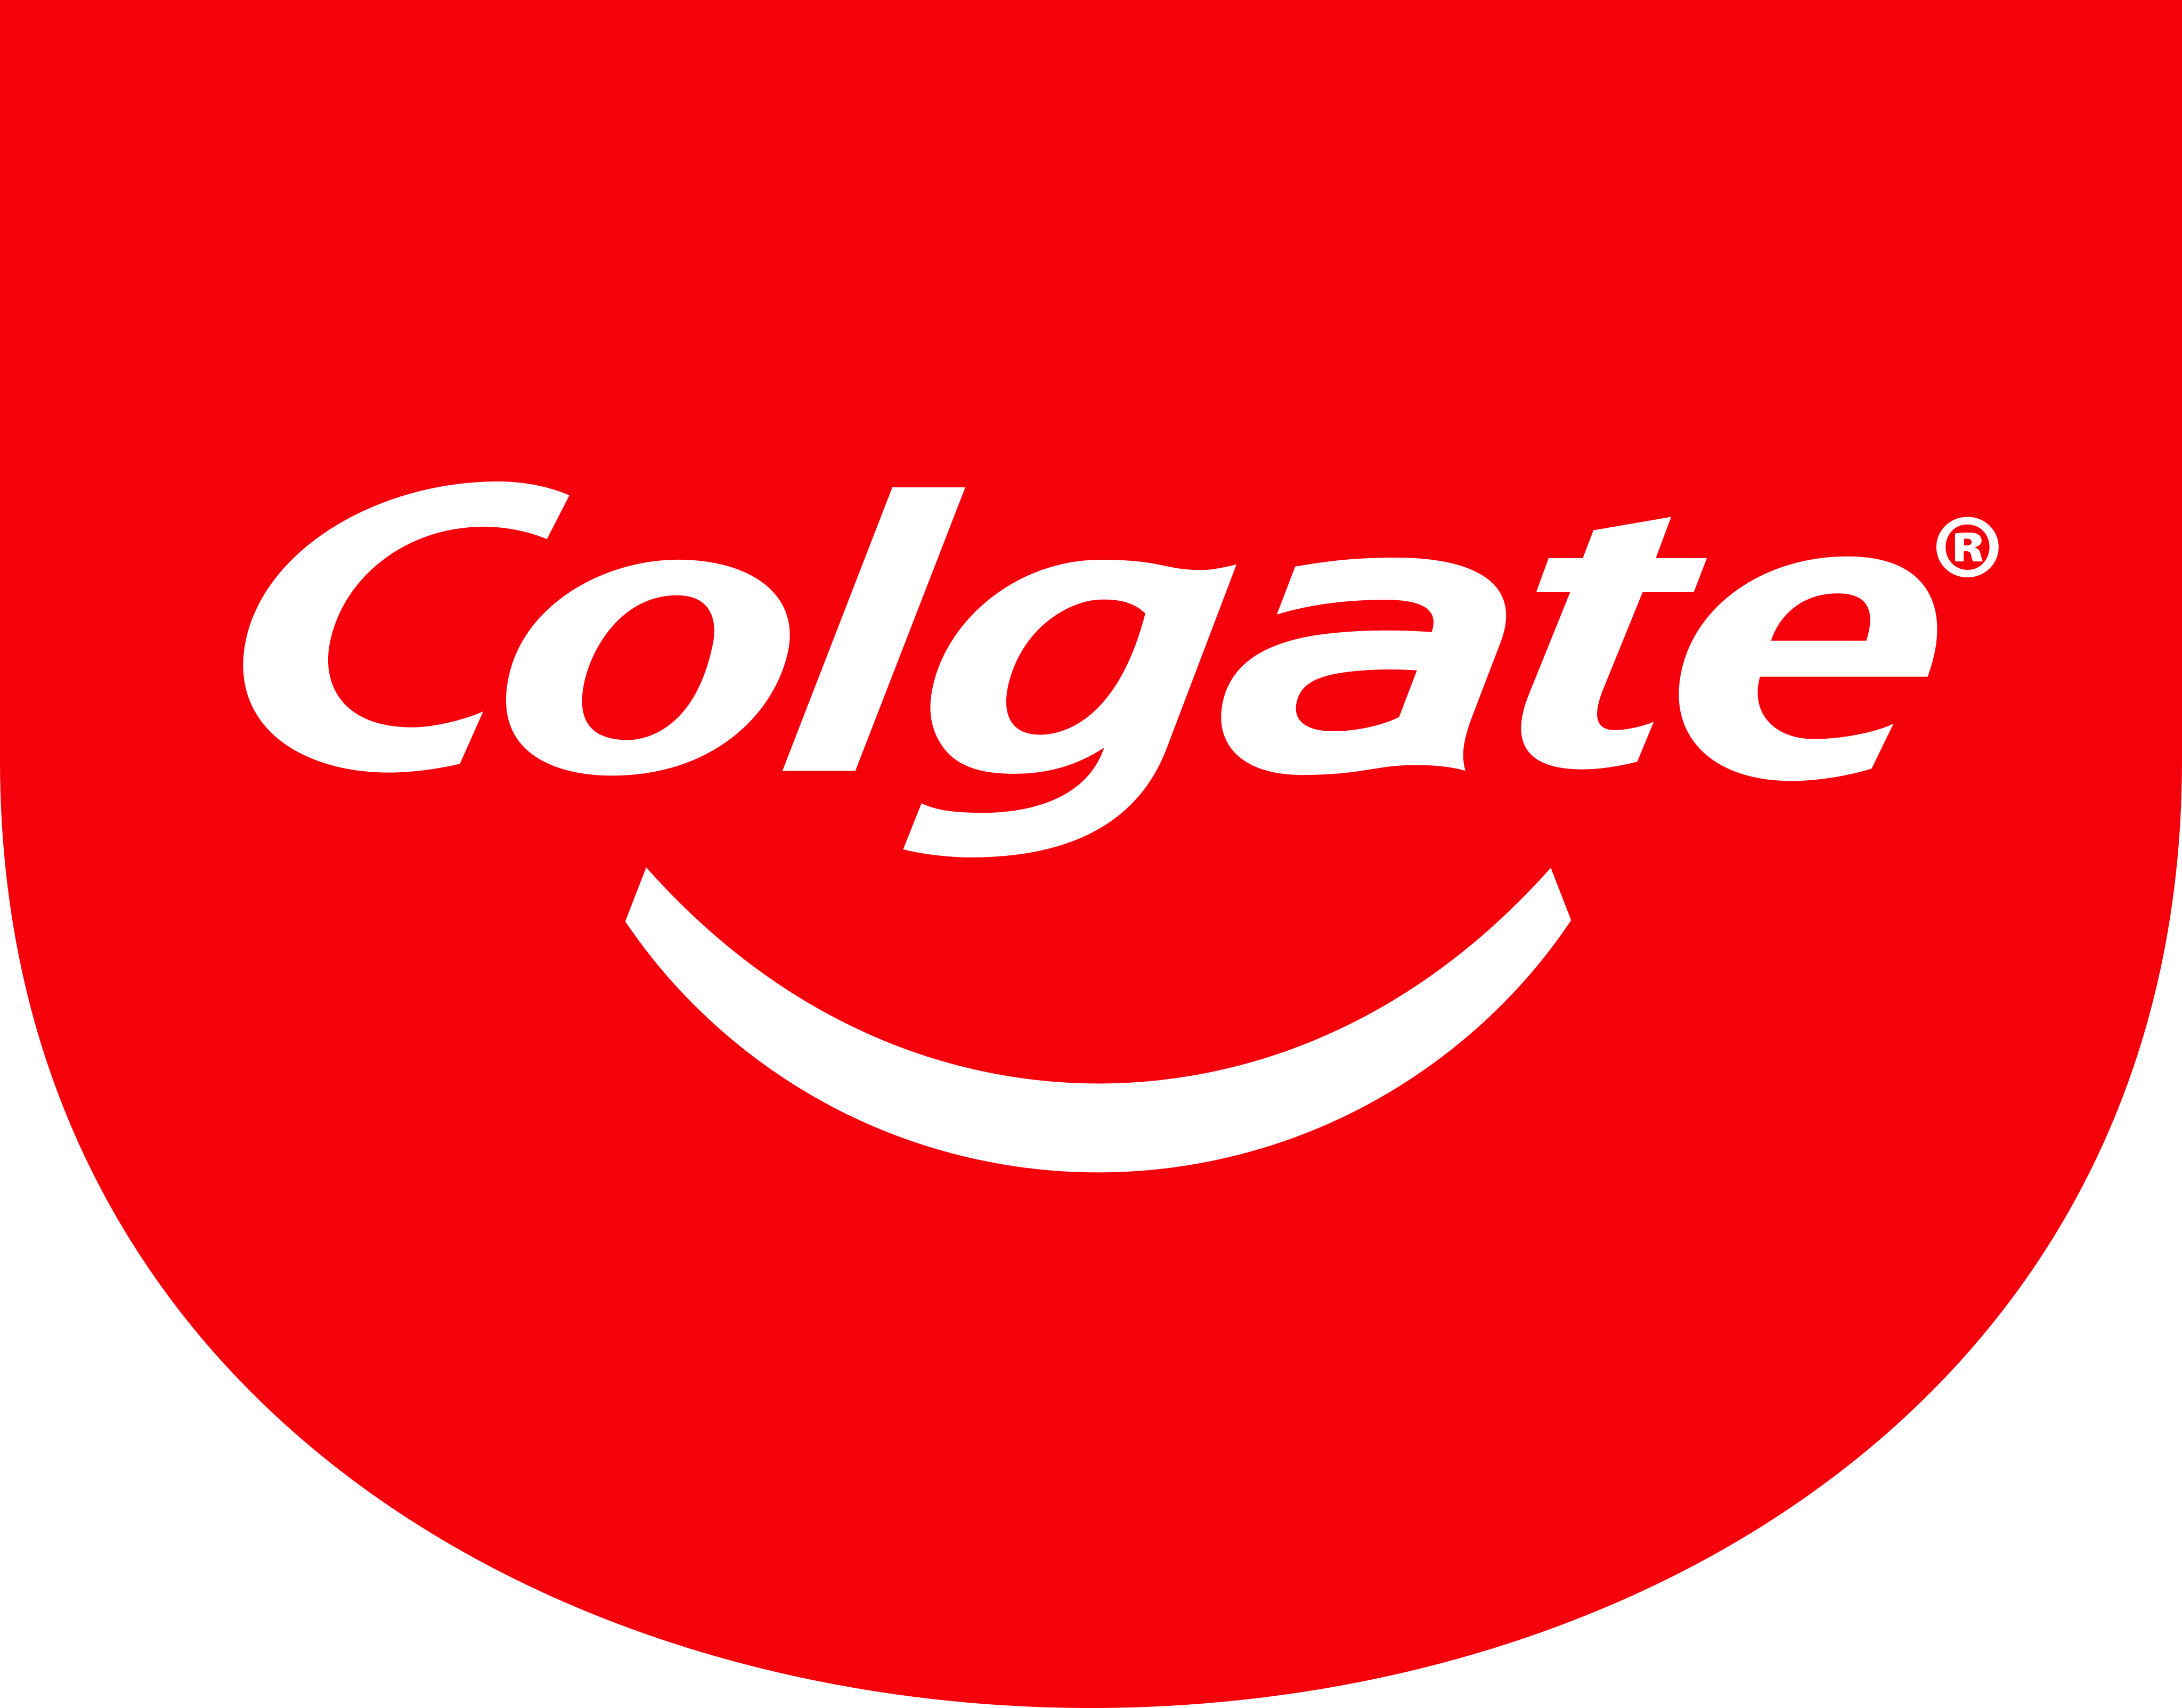 Colgate Png - KibrisPDR